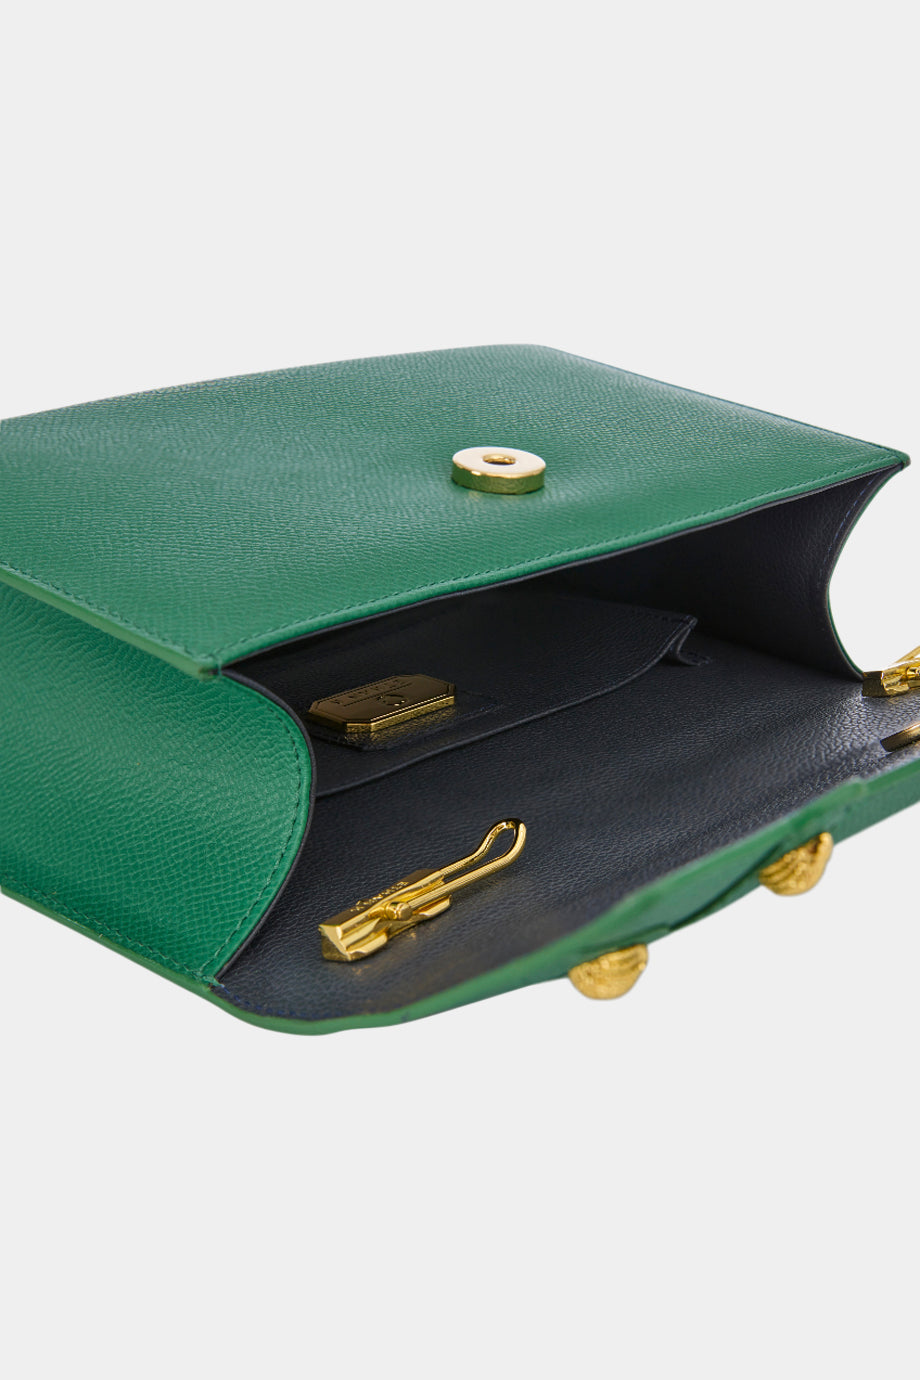 Mini Briefcase Green